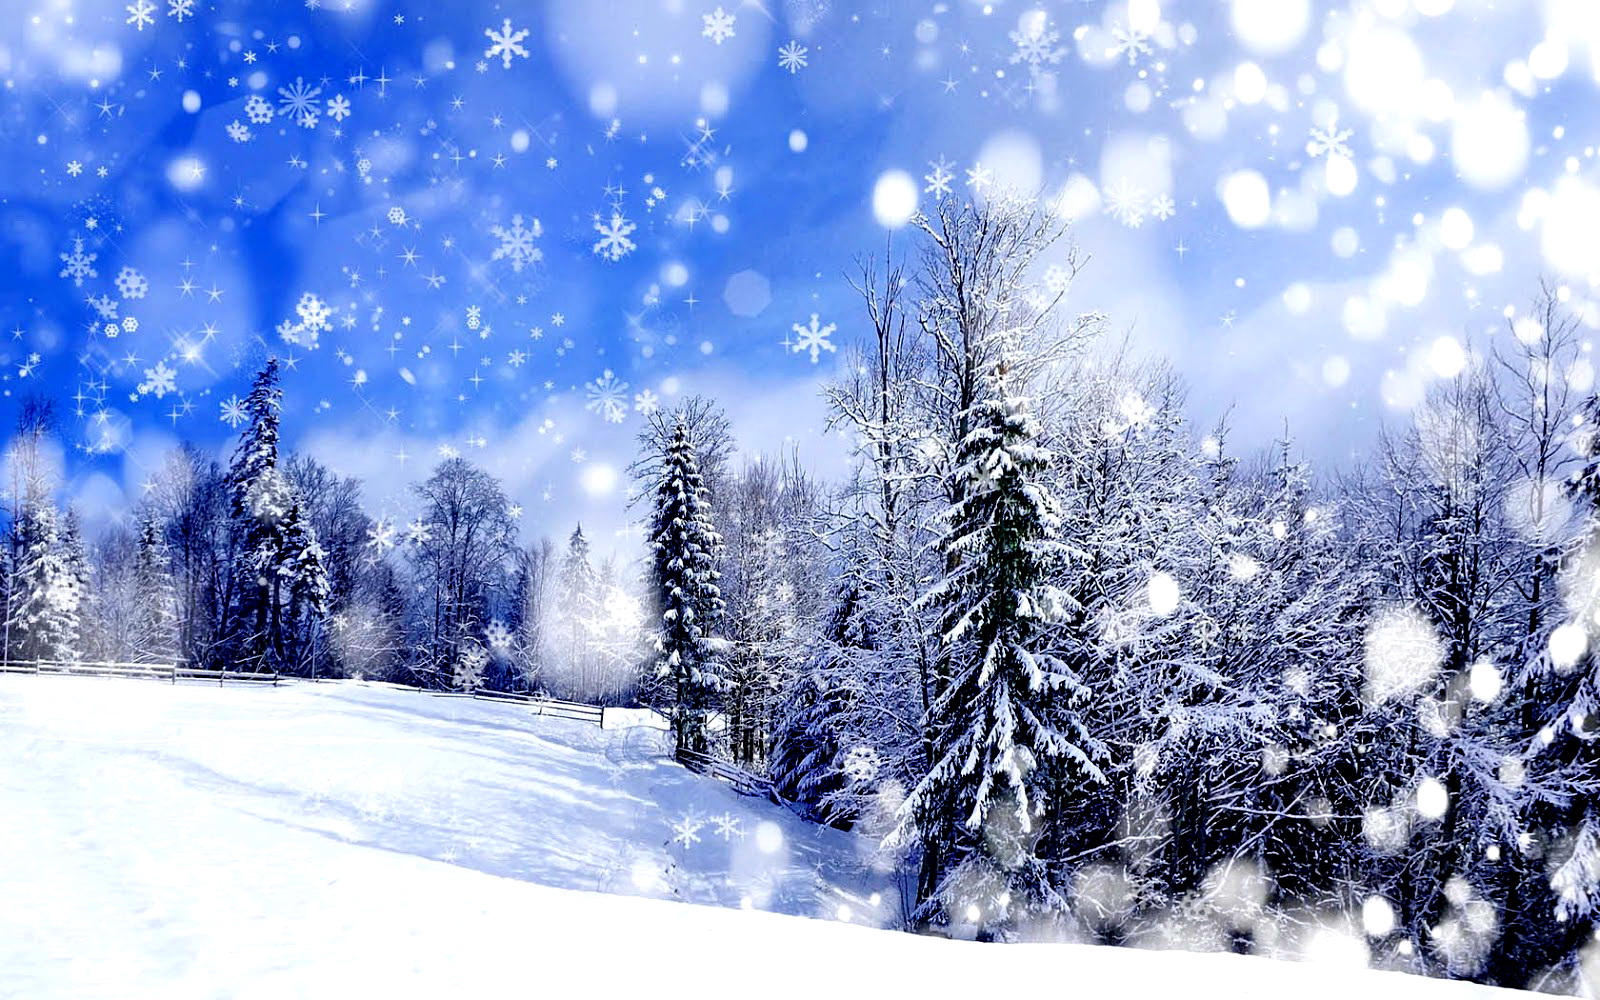 Скачать обои бесплатно Зима, Снег, Снежинки, Дерево, Снегопад, Художественные картинка на рабочий стол ПК